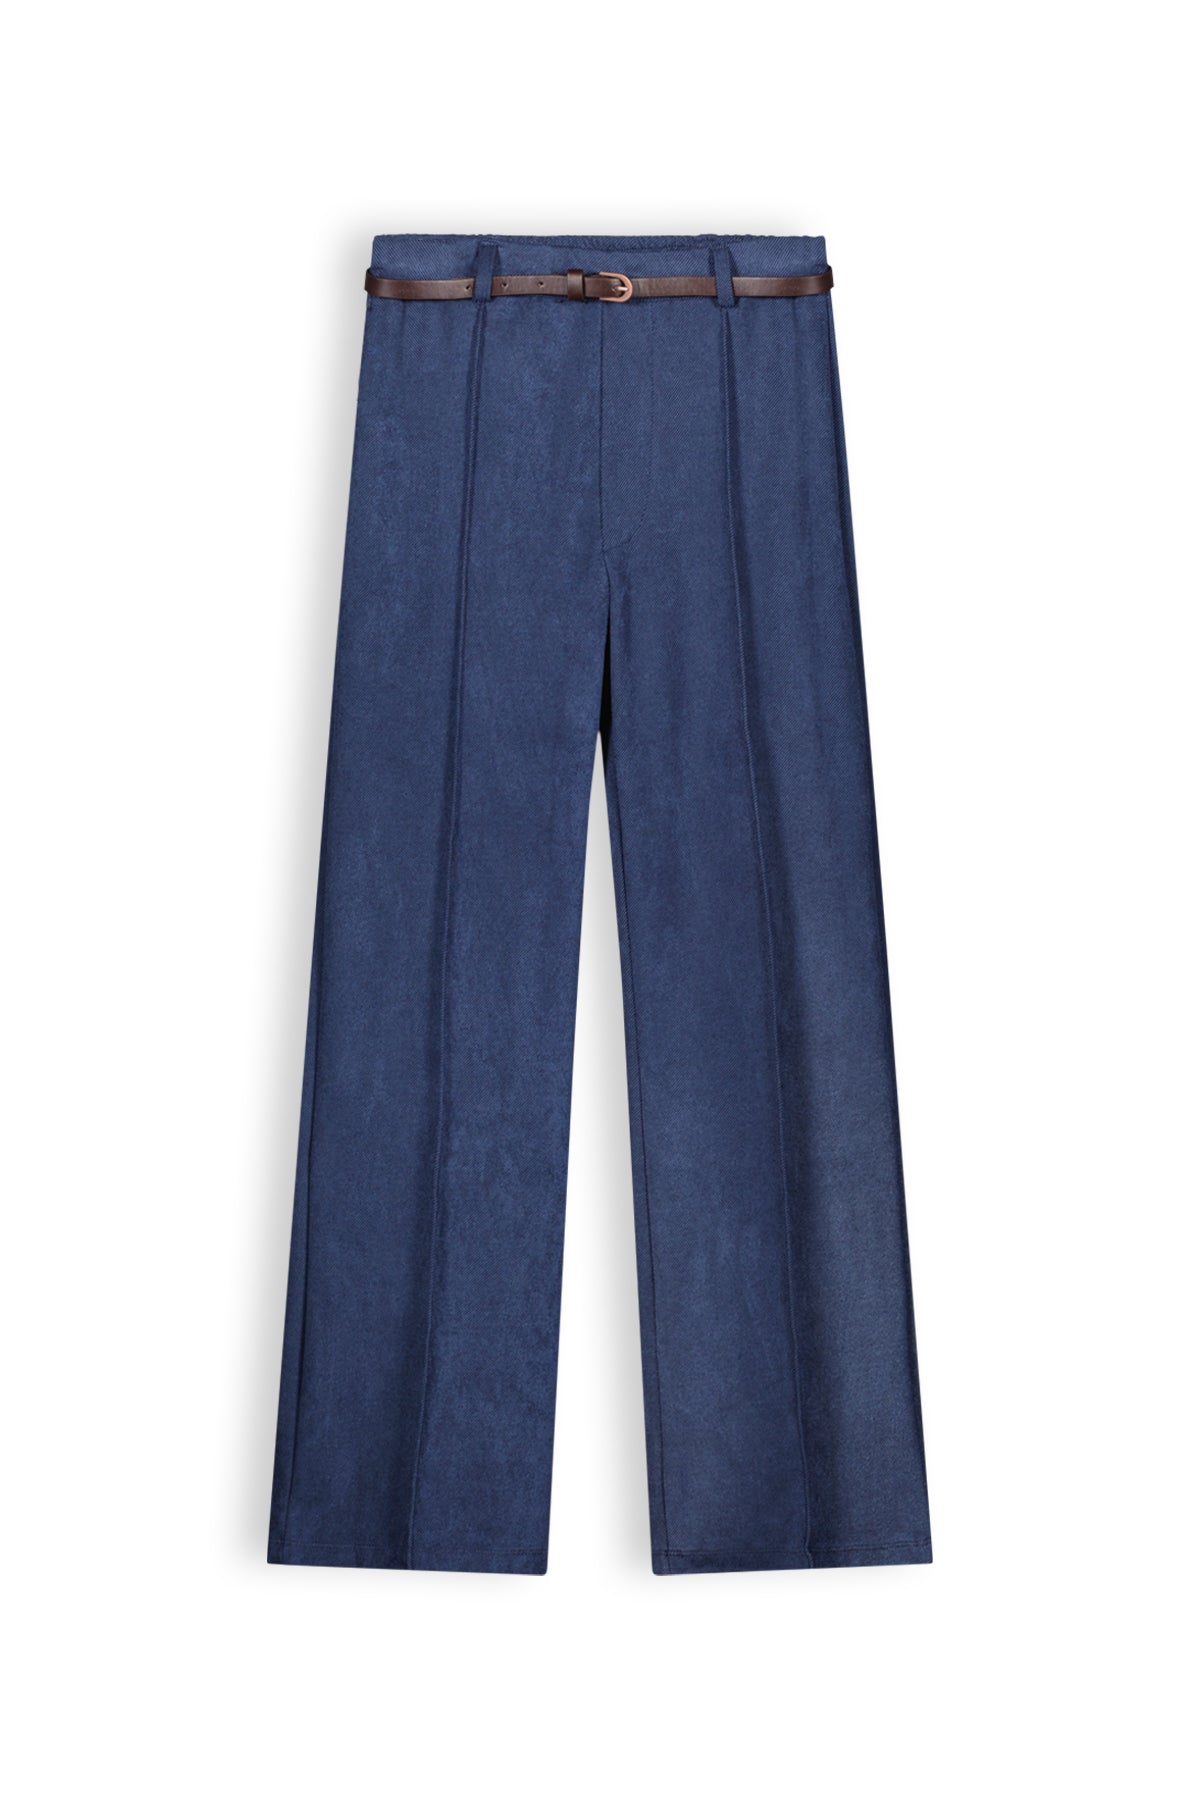 Meisjes Slim girs palazzo twill pants+belt navy van NoBell in de kleur Navy Blazer in maat 170-176.